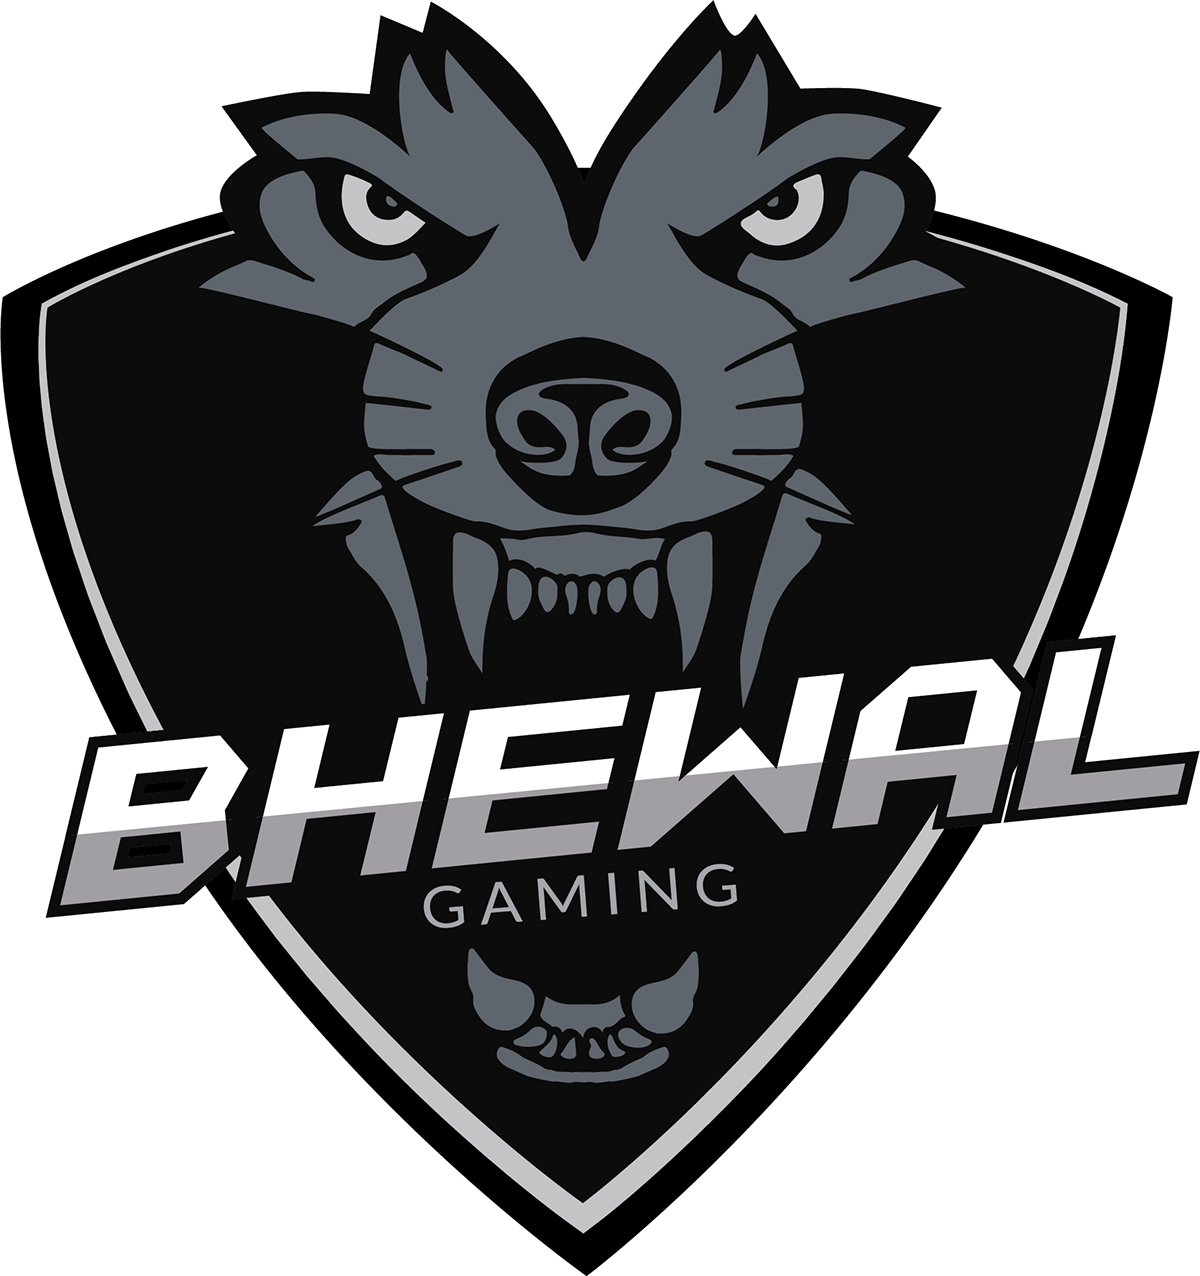 Gaming Gamer Fortnite wolves wolf bhewal design logo rawr